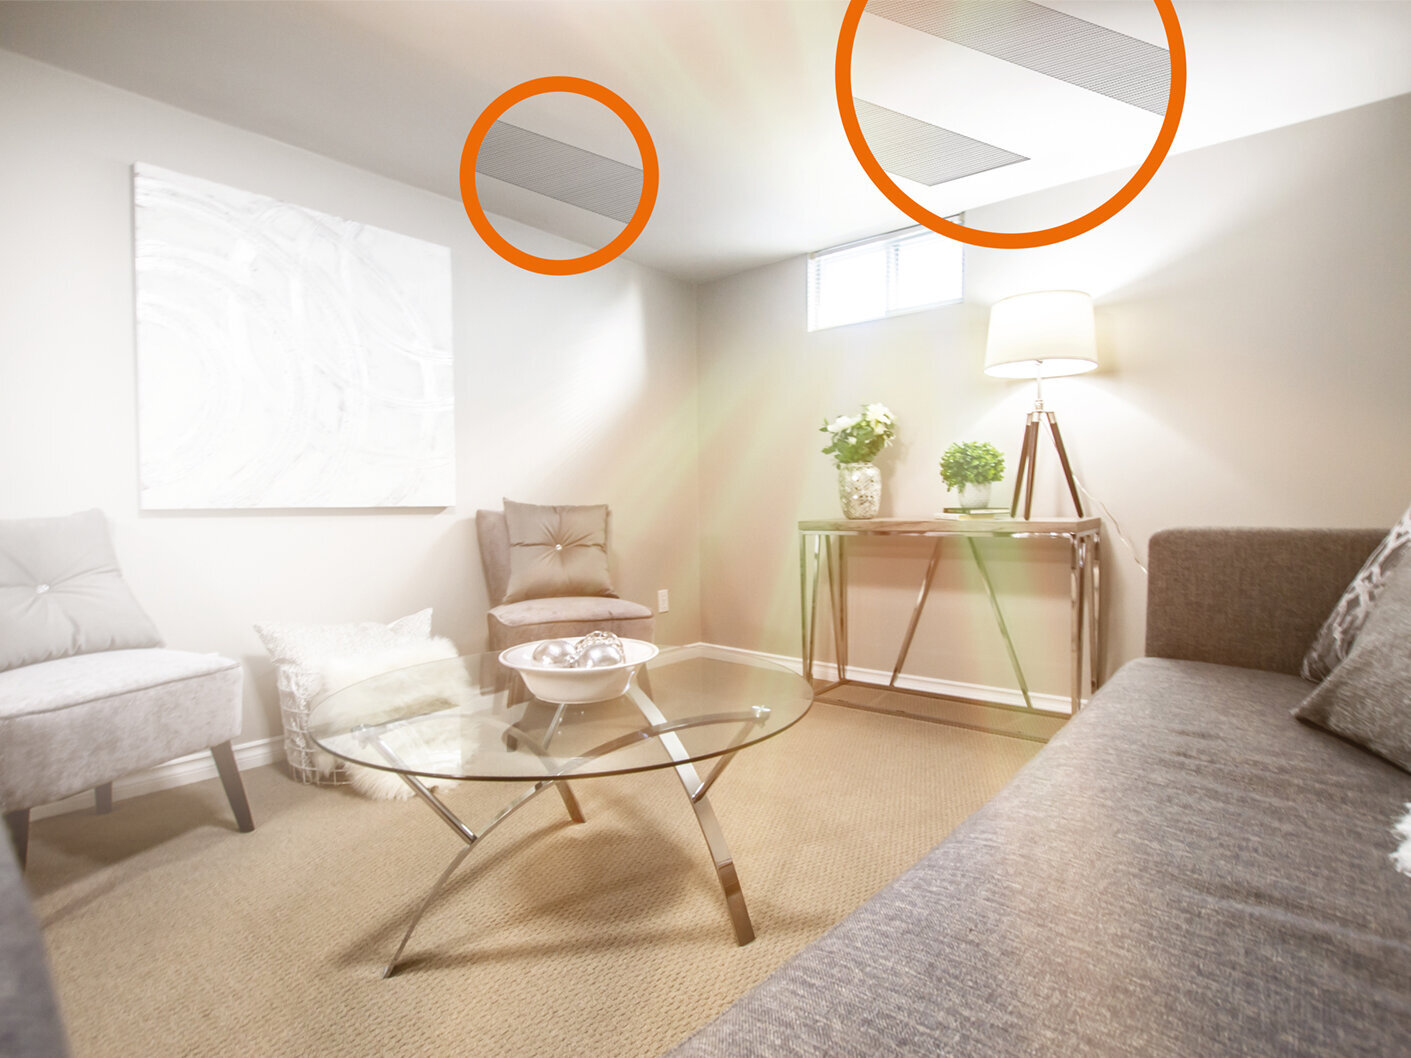 Mit dem Room-System von V4heat bekommen Sie ein Infrarot-Heizsystem für einzelne Räume.